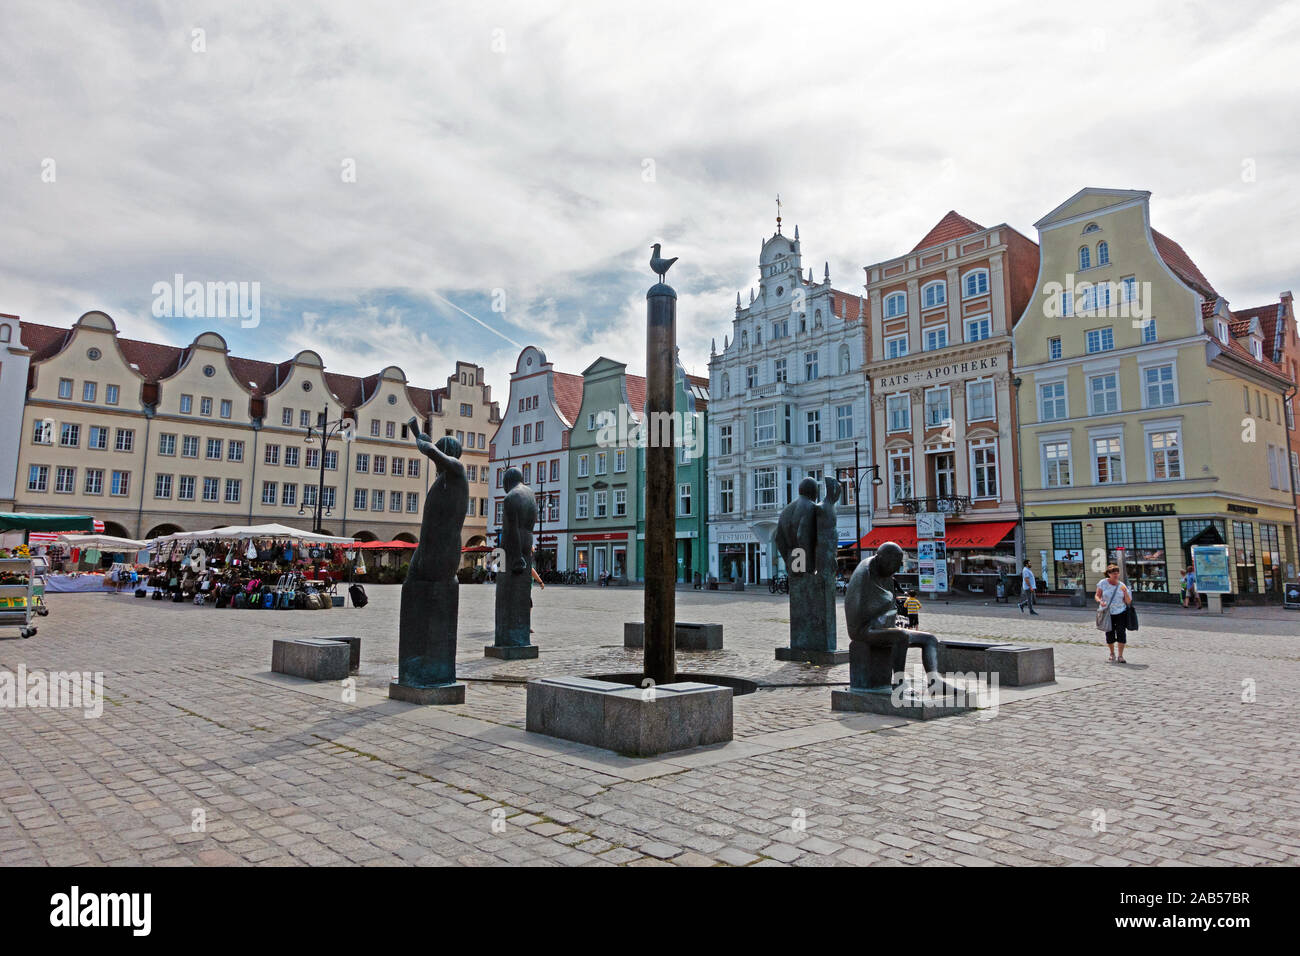 Sculptures in Neuer Markt Square, Rostock Stock Photo: 333873787 ...